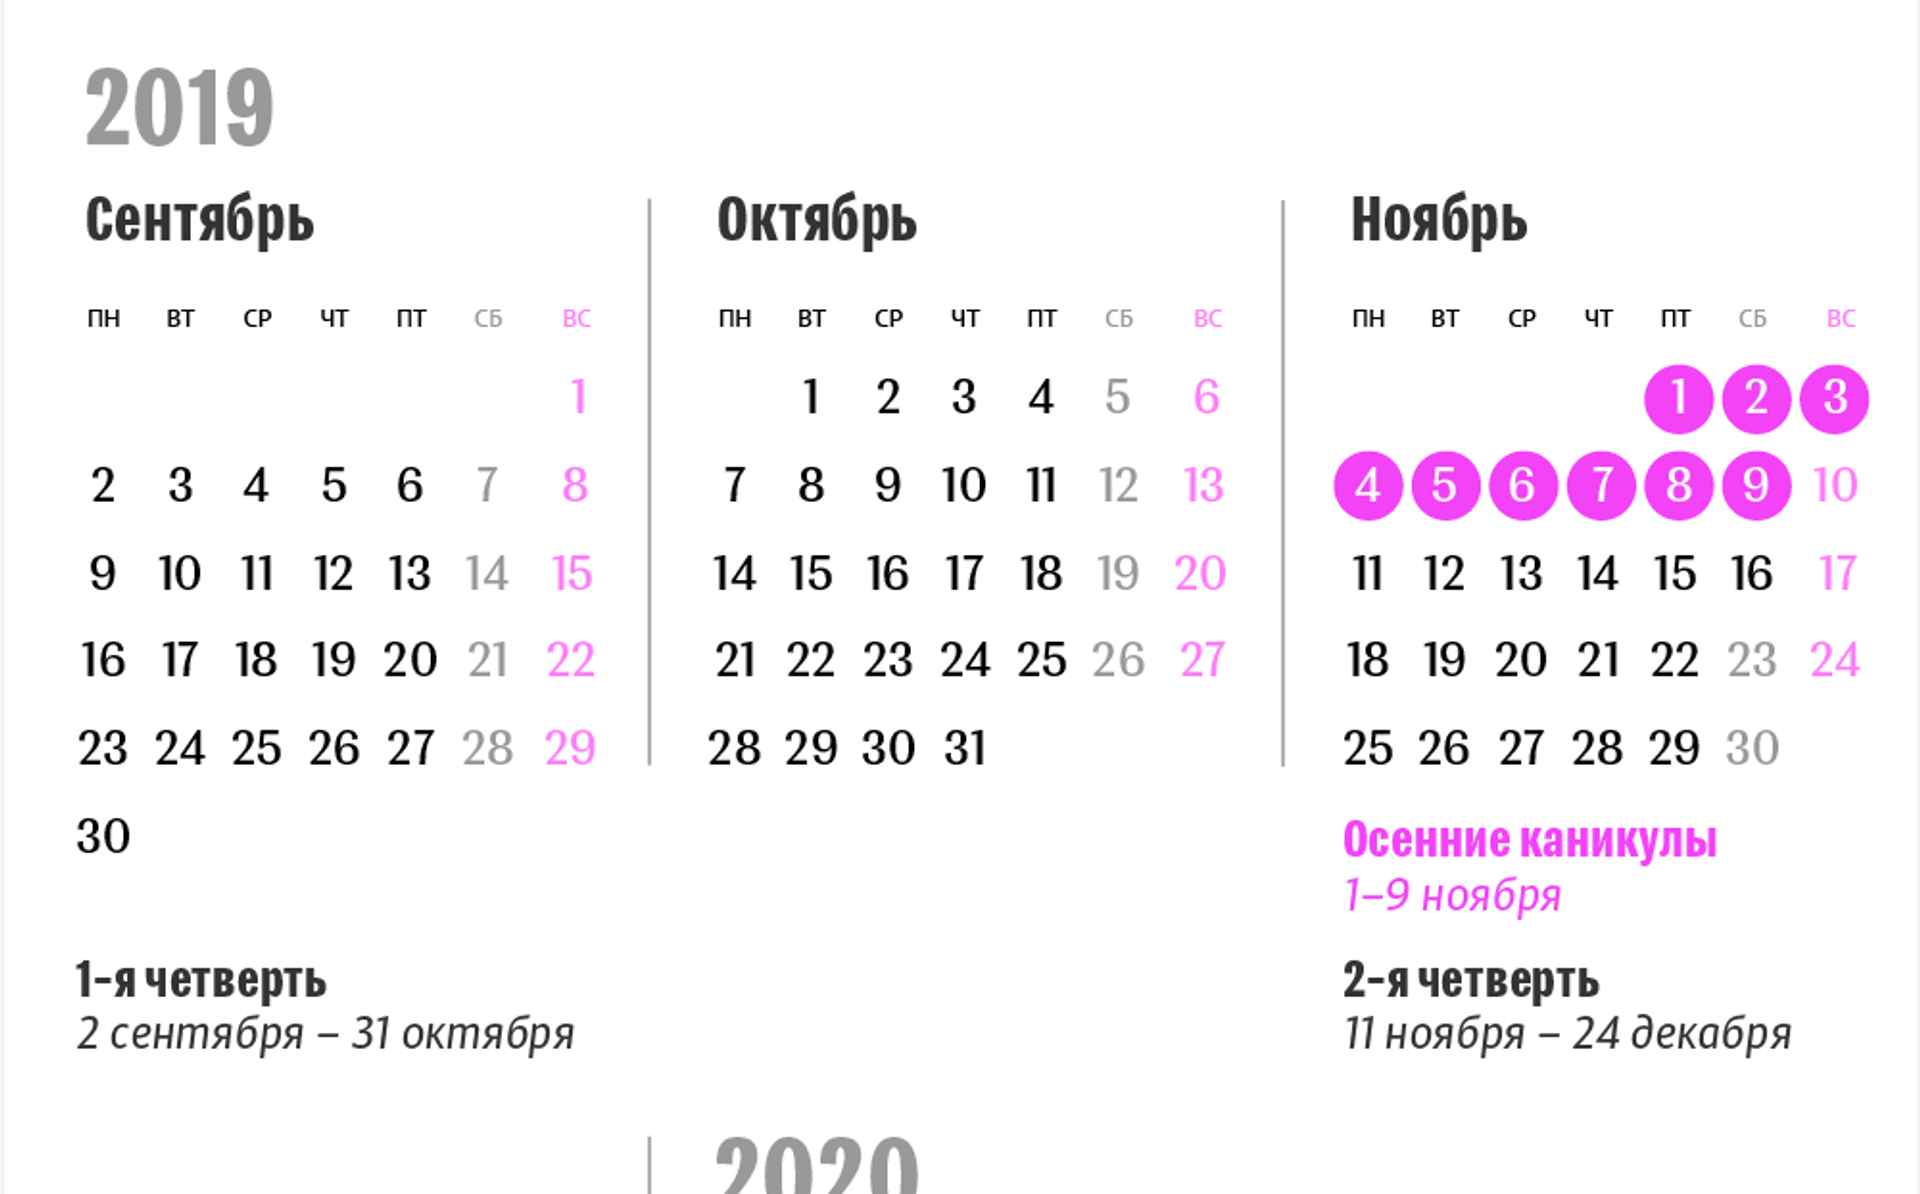 Календарь 2019/2020 учебного года в Беларуси: даты учебных четвертей и  каникул - 26.08.2019, Sputnik Беларусь